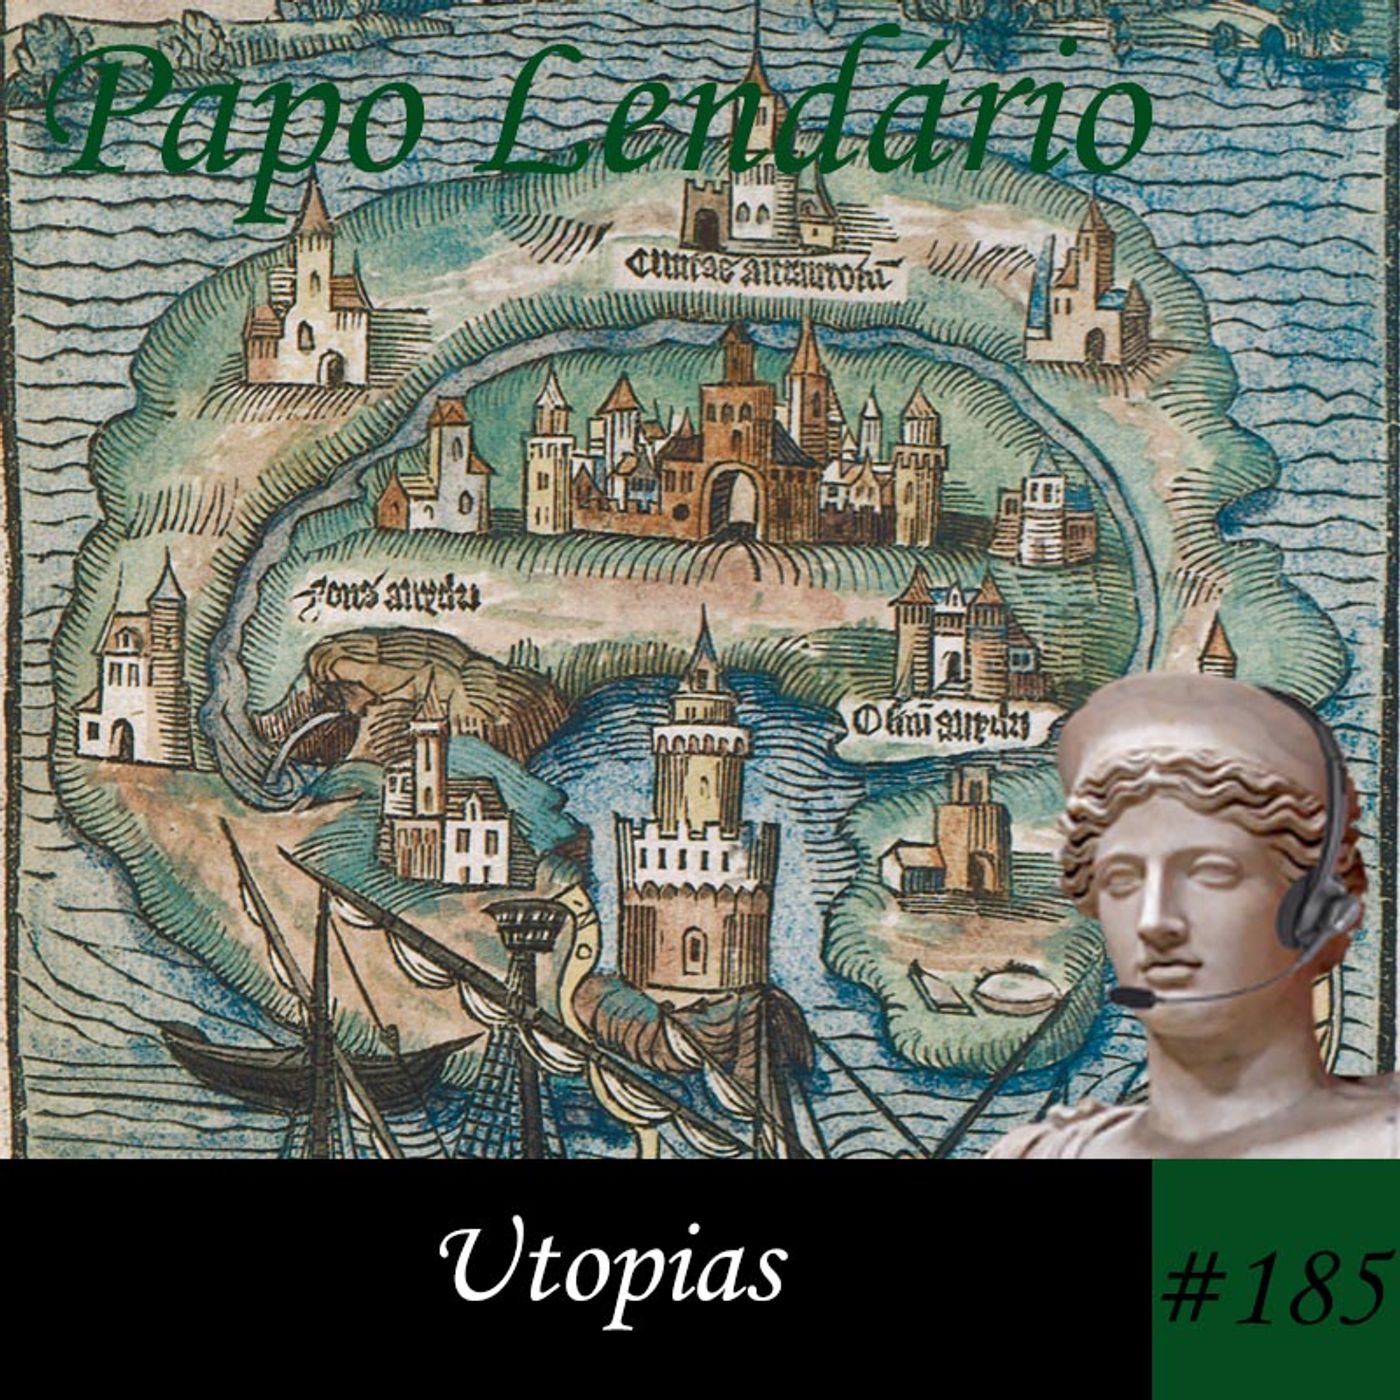 Papo Lendário #185 – Utopias